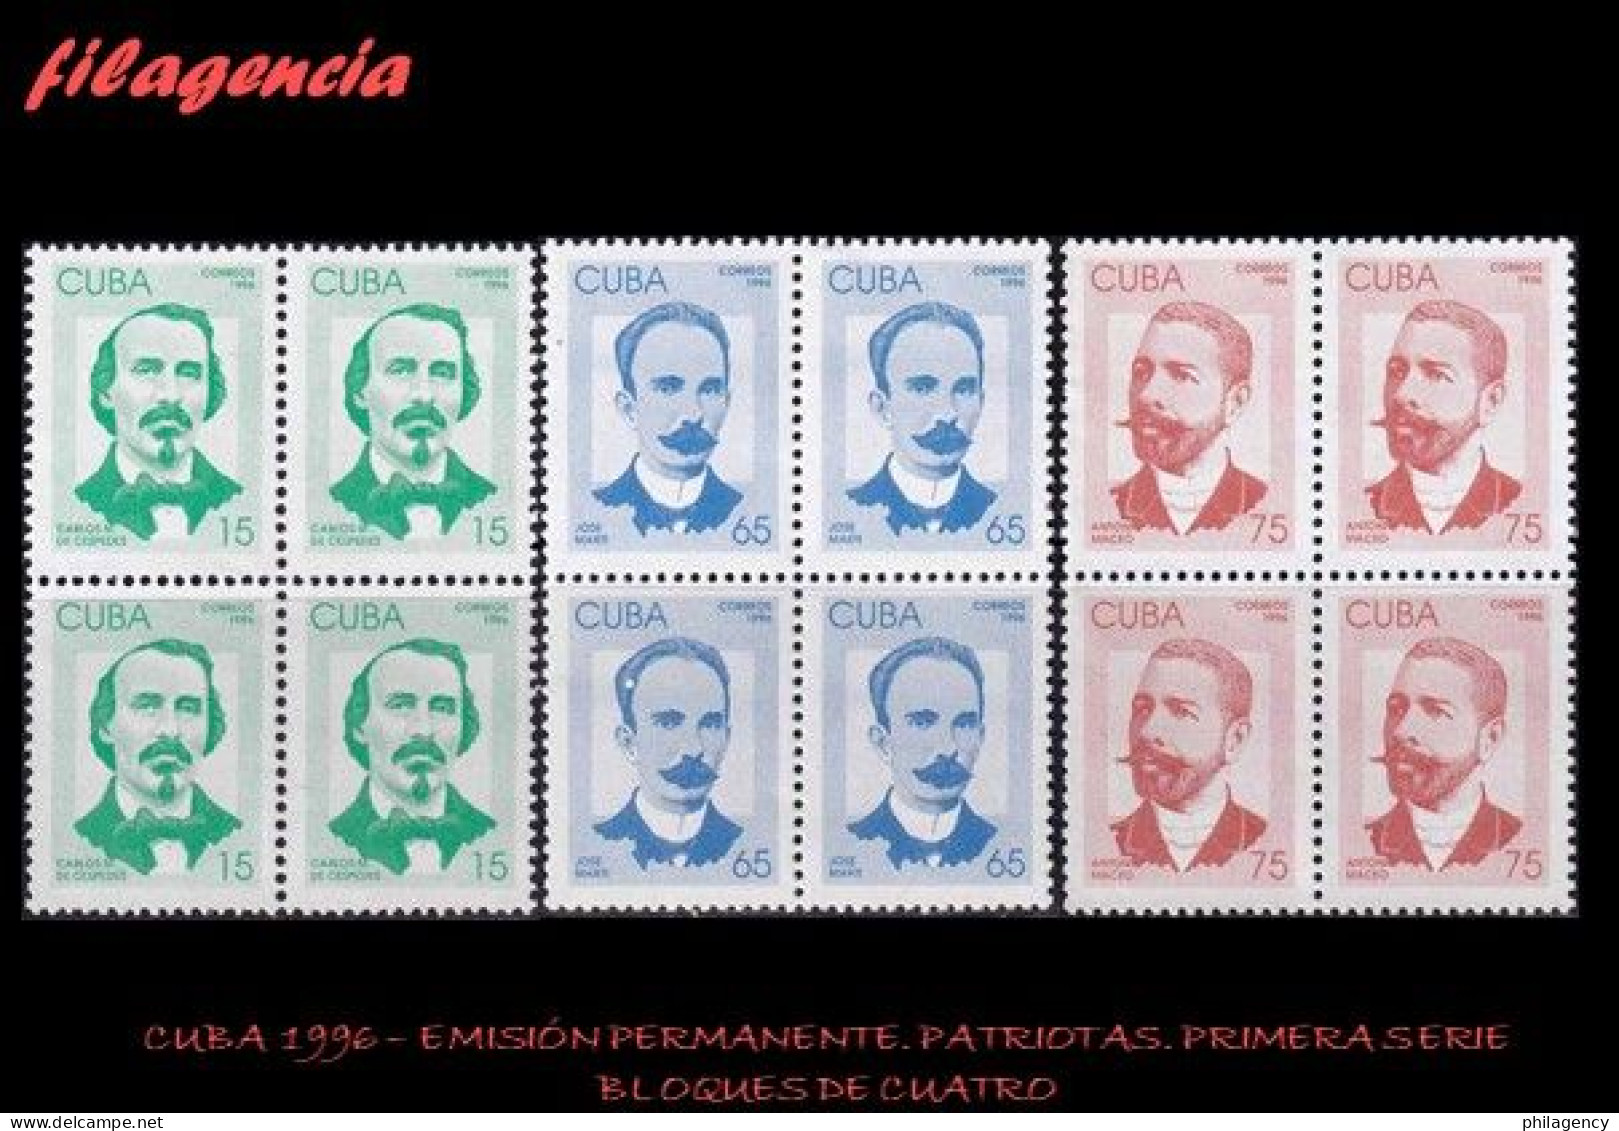 CUBA. BLOQUES DE CUATRO. 1996-01 EMISIÓN PERMANENTE. PATRIOTAS CUBANOS. PRIMERA SERIE - Ungebraucht